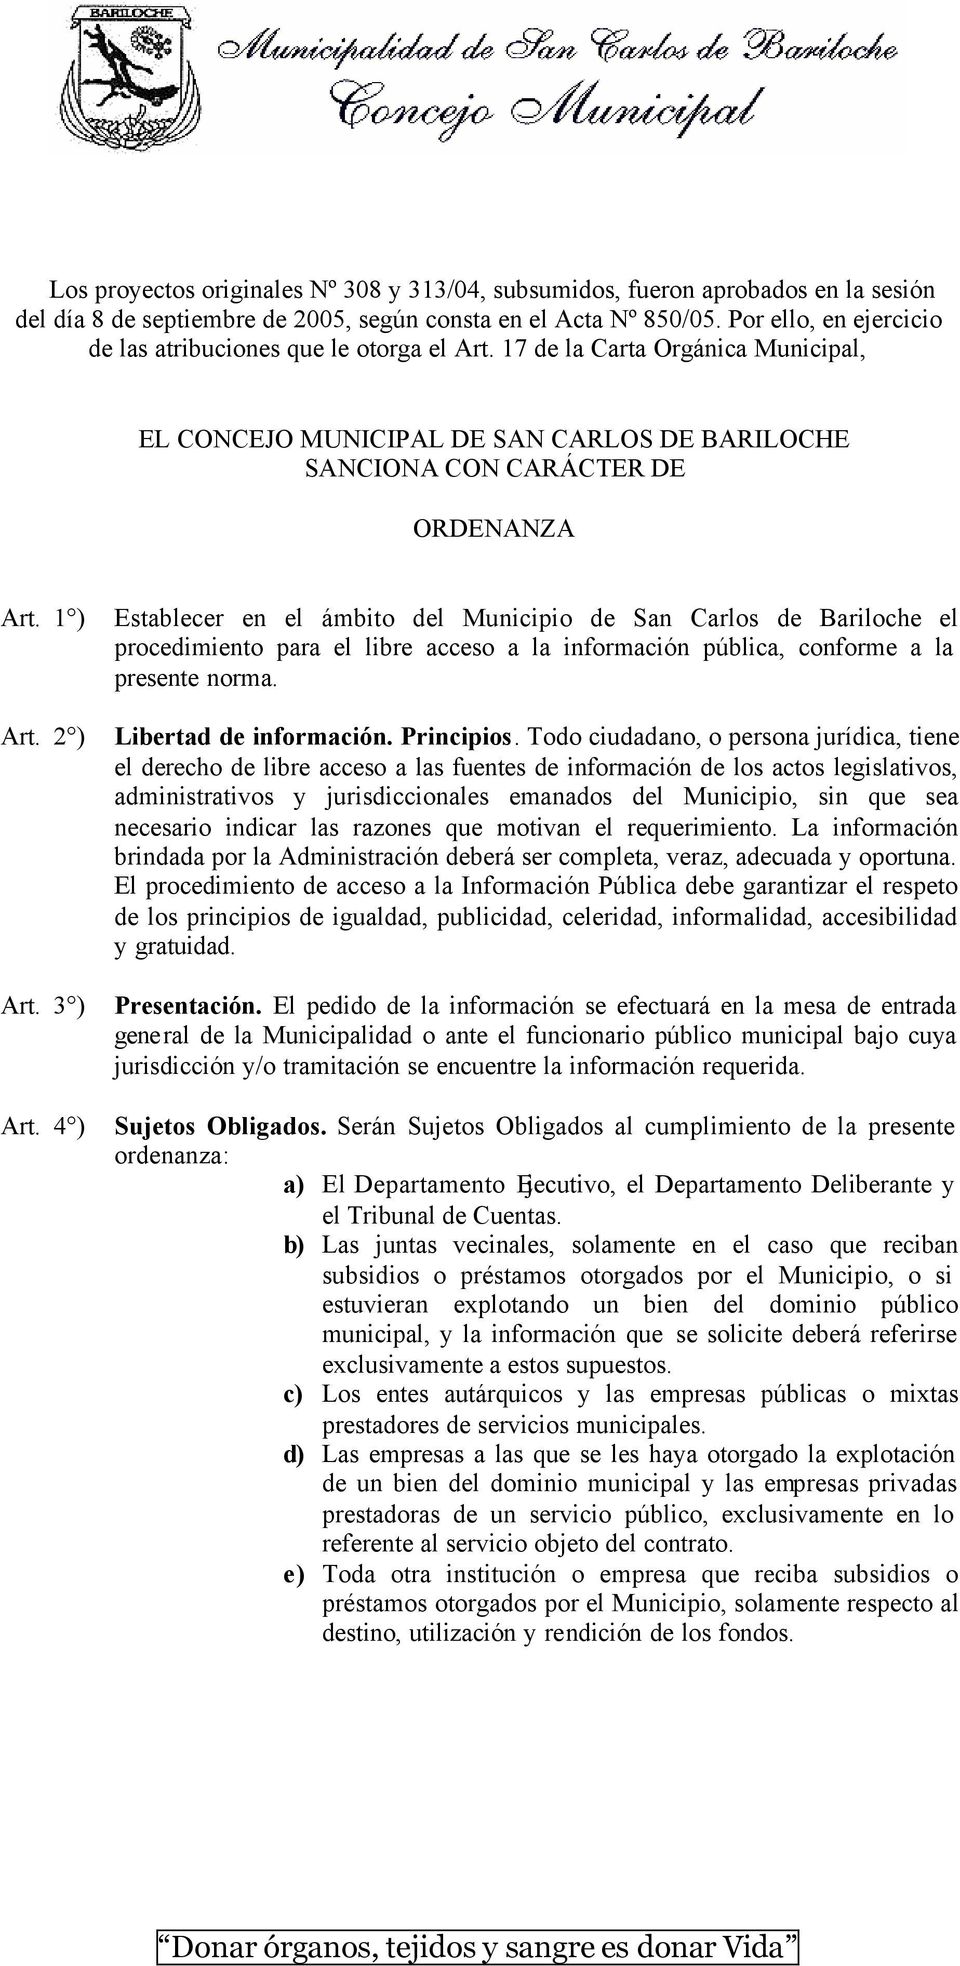 2 ) Art. 3 ) Art. 4 ) Establecer en el ámbito del Municipio de San Carlos de Bariloche el procedimiento para el libre acceso a la información pública, conforme a la presente norma.